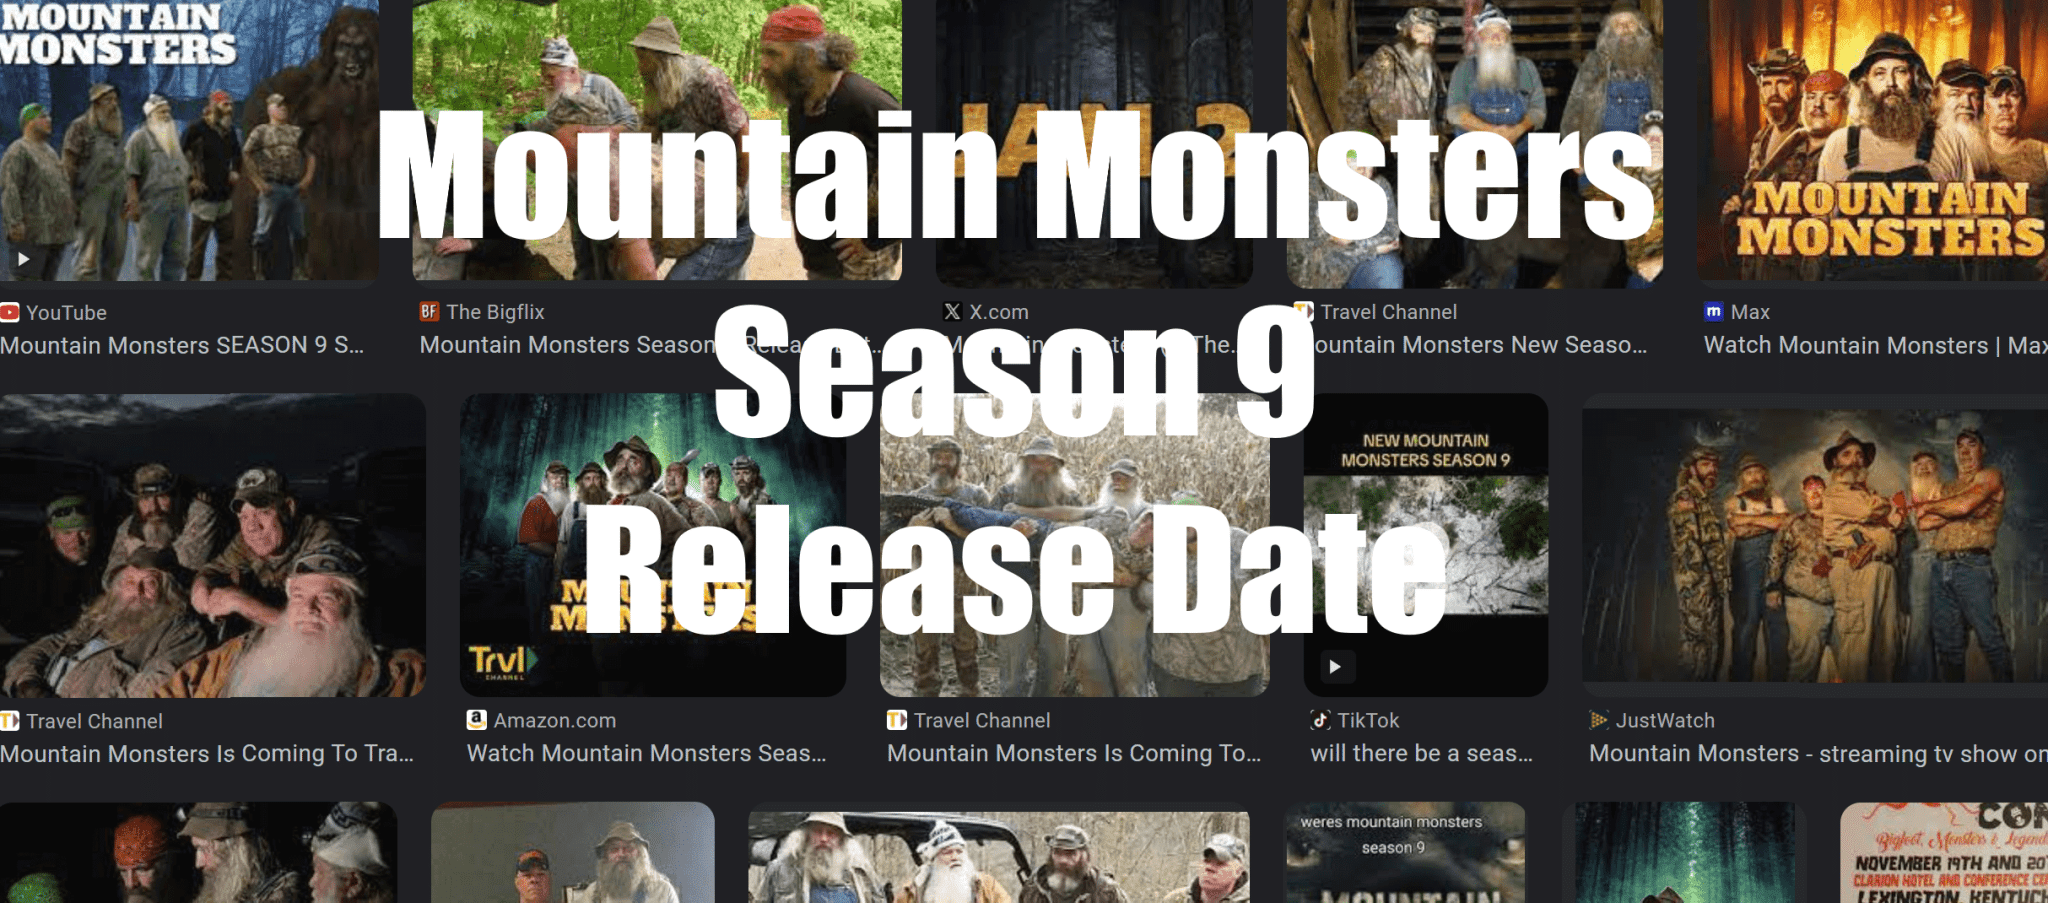 Mountain Monsters Season 9 Release Date